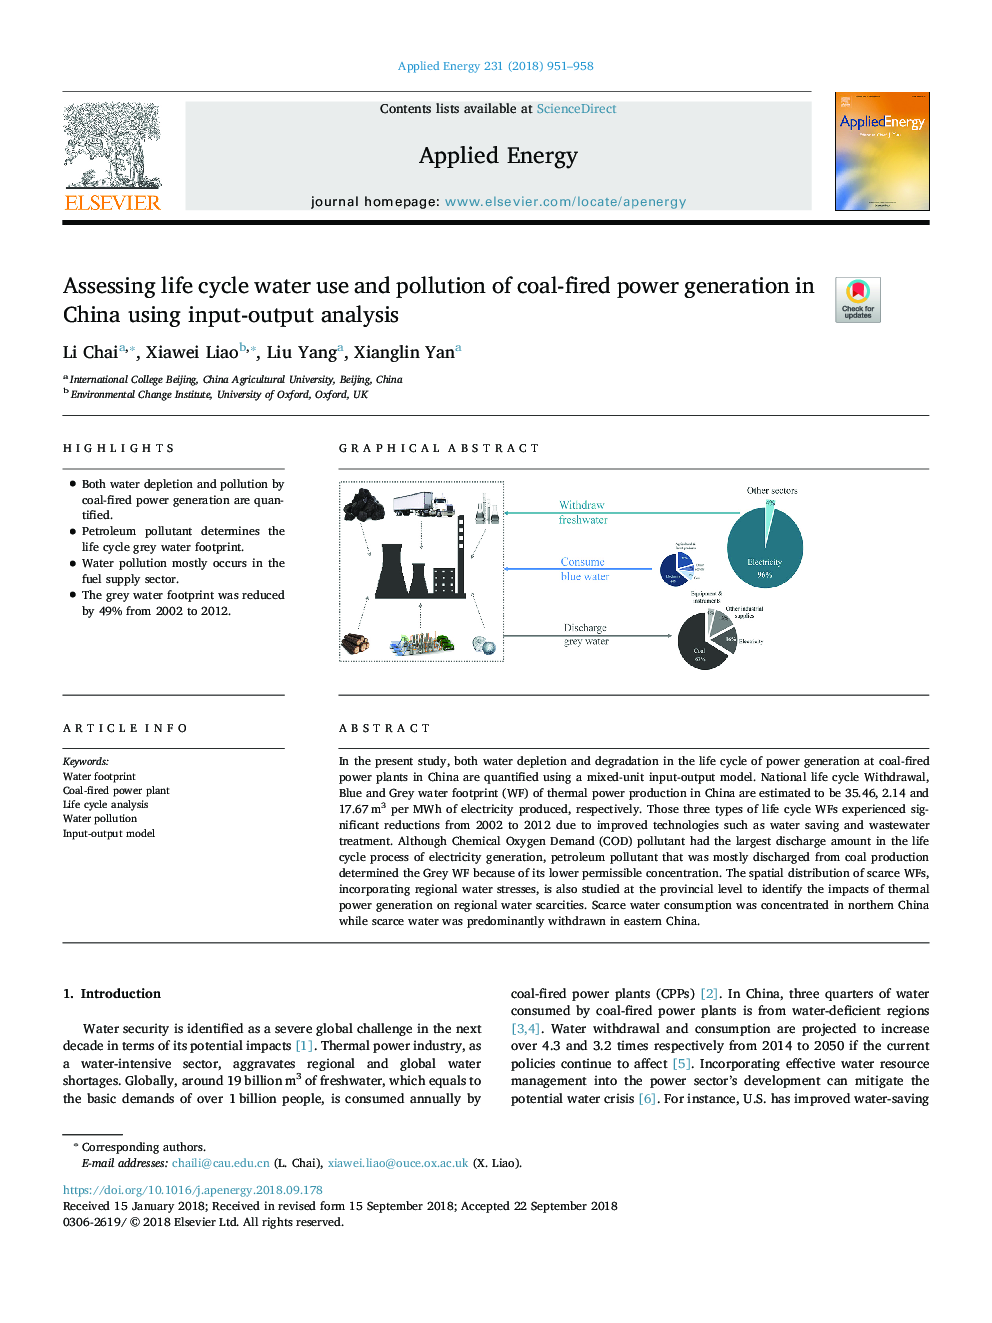 ارزیابی چرخه مصرف آب و آلودگی تولید برق ذغال سنگ در چین با استفاده از تجزیه و تحلیل ورودی / خروجی